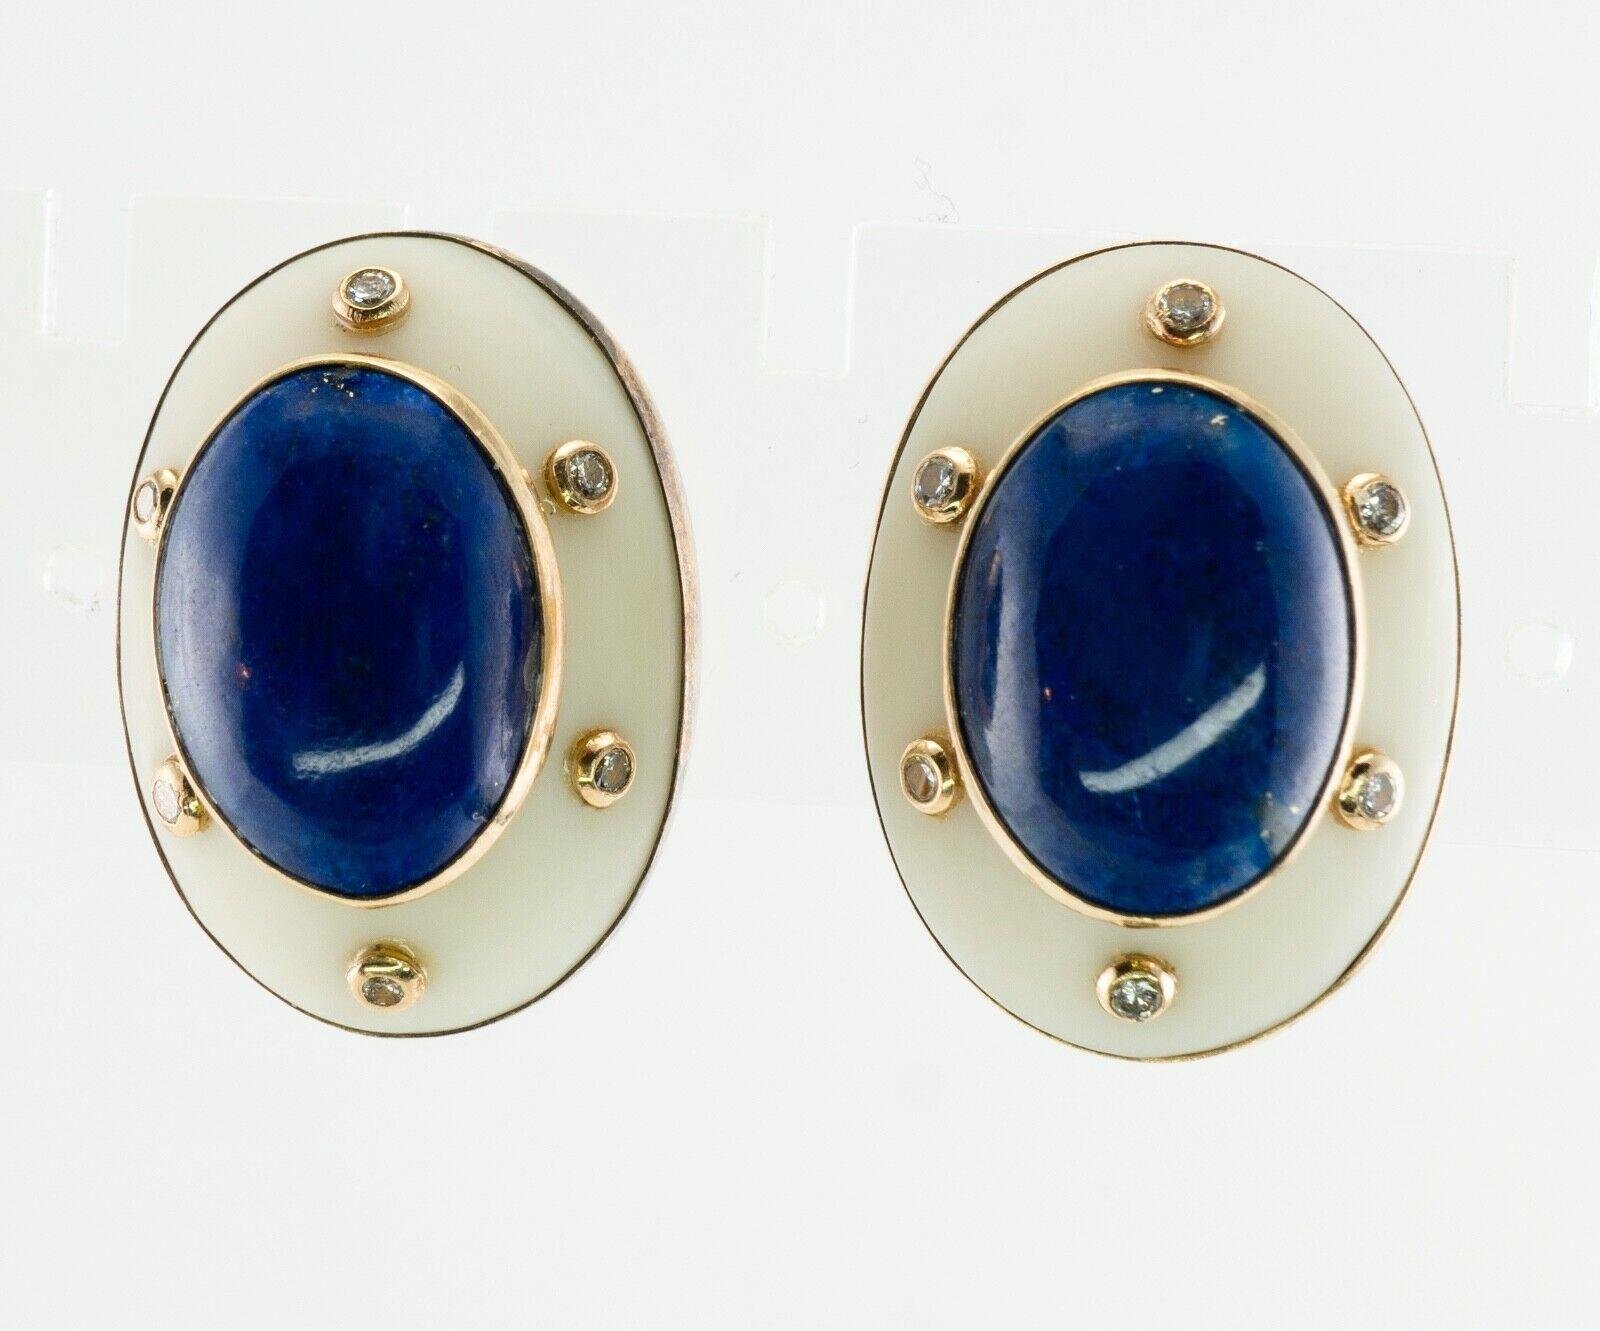 Dieses Paar Vintage-Ohrringe aus der Mitte des Jahrhunderts ist aus massivem 14-karätigem Gelbgold und 18-karätigem Gold für die Ohrstecker gefertigt.
Das Zentrum Lünette gesetzt natürlichen Lapis Lazuli misst 16mm x 12mm.
Sechs in die Lünette